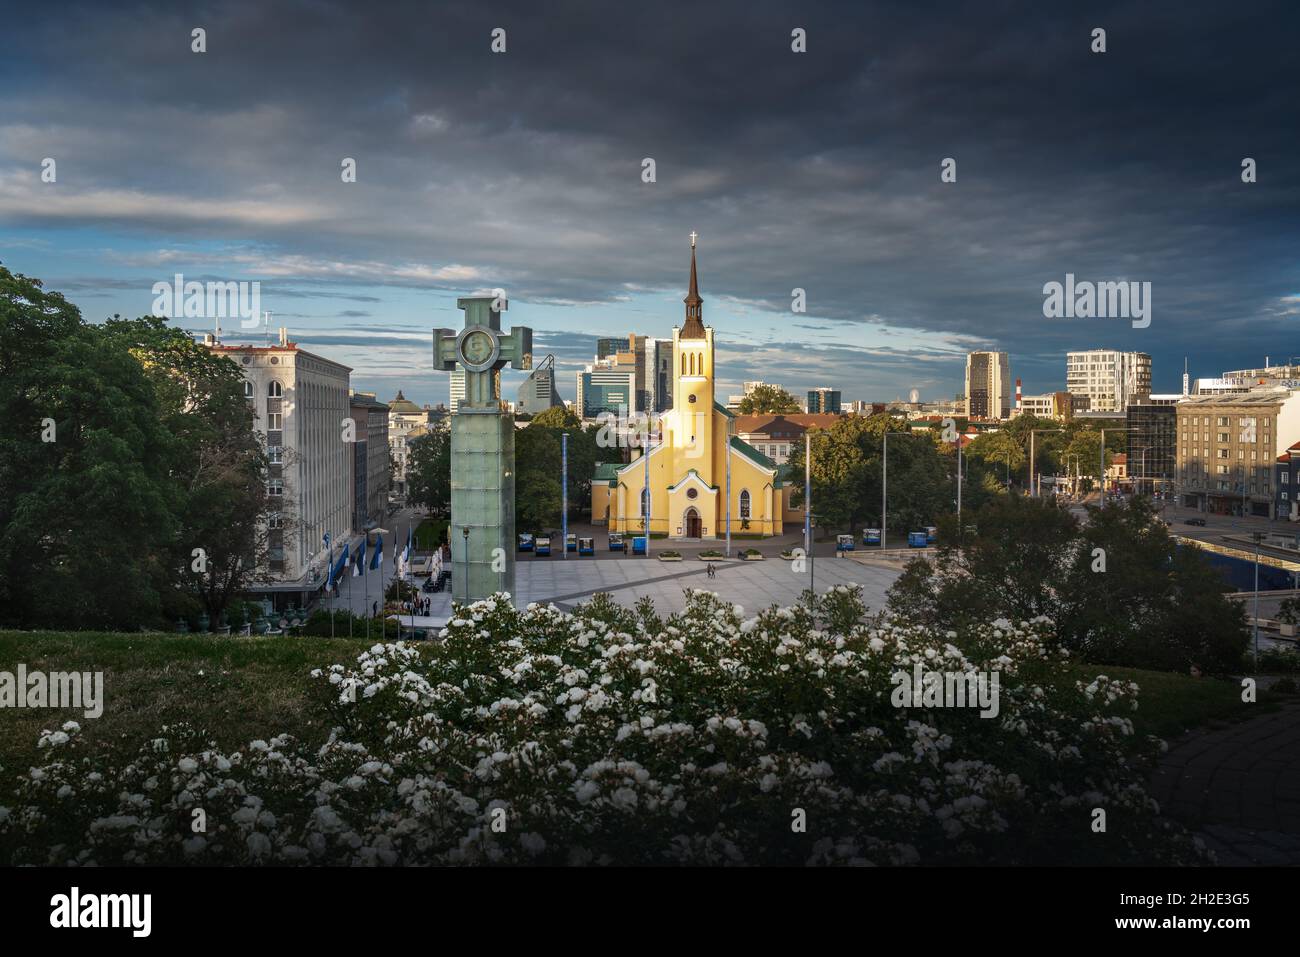 Place de la liberté avec la colonne de la victoire de la guerre d'indépendance et l'église St Johns - Tallinn, Estonie Banque D'Images